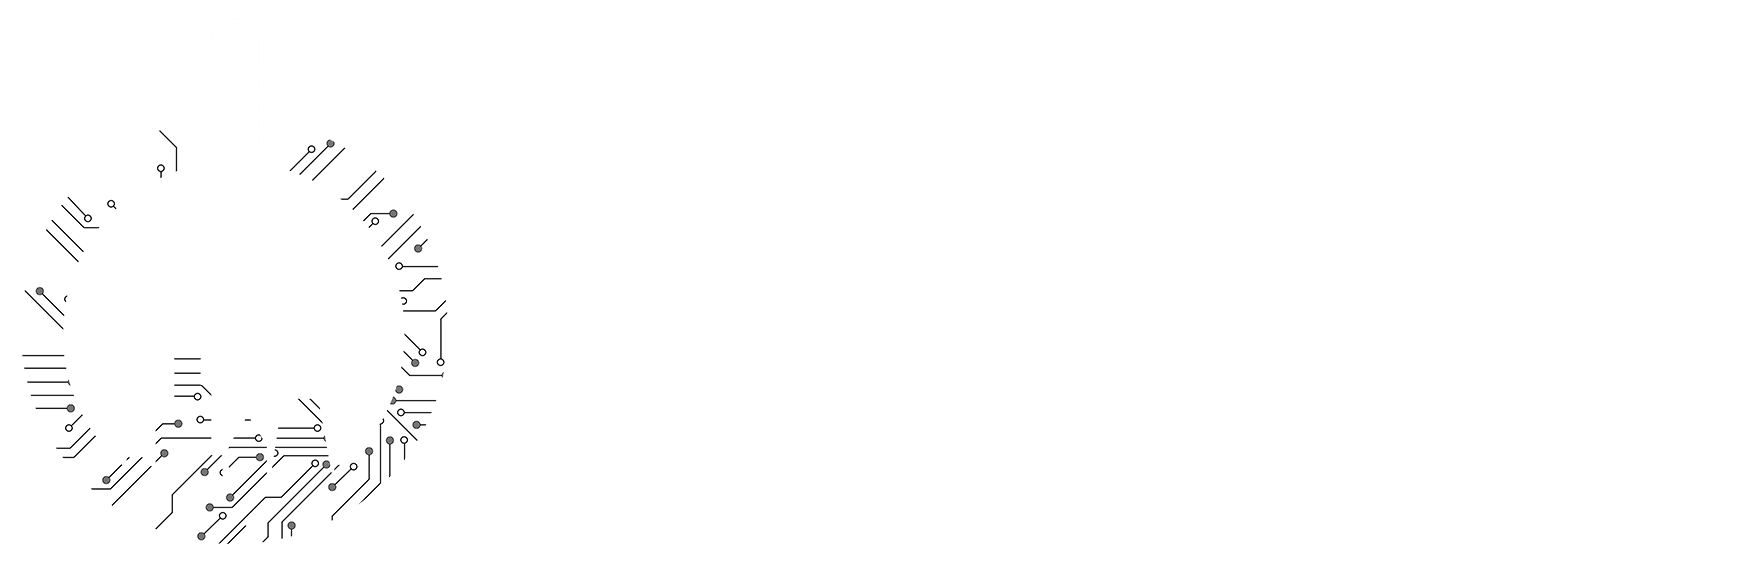 Future Tech Career Institute